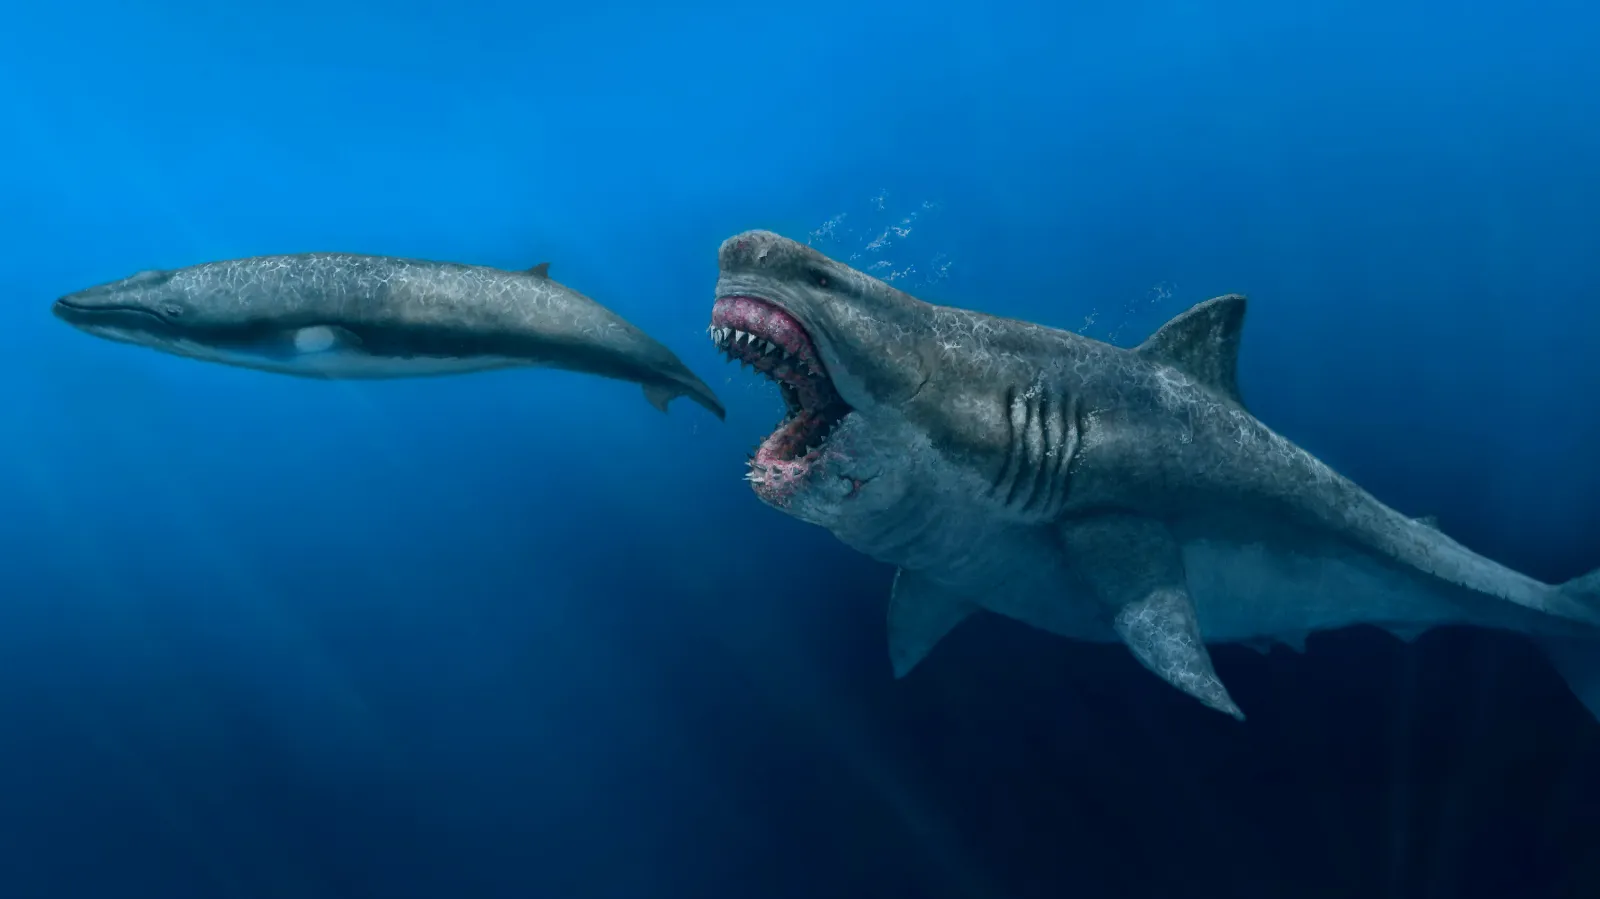 Учёные до сих пор гадают, как именно выглядел мегалодон, поскольку за сто лет были найдены в основном отдельные позвонки и зубы этой рыбы.